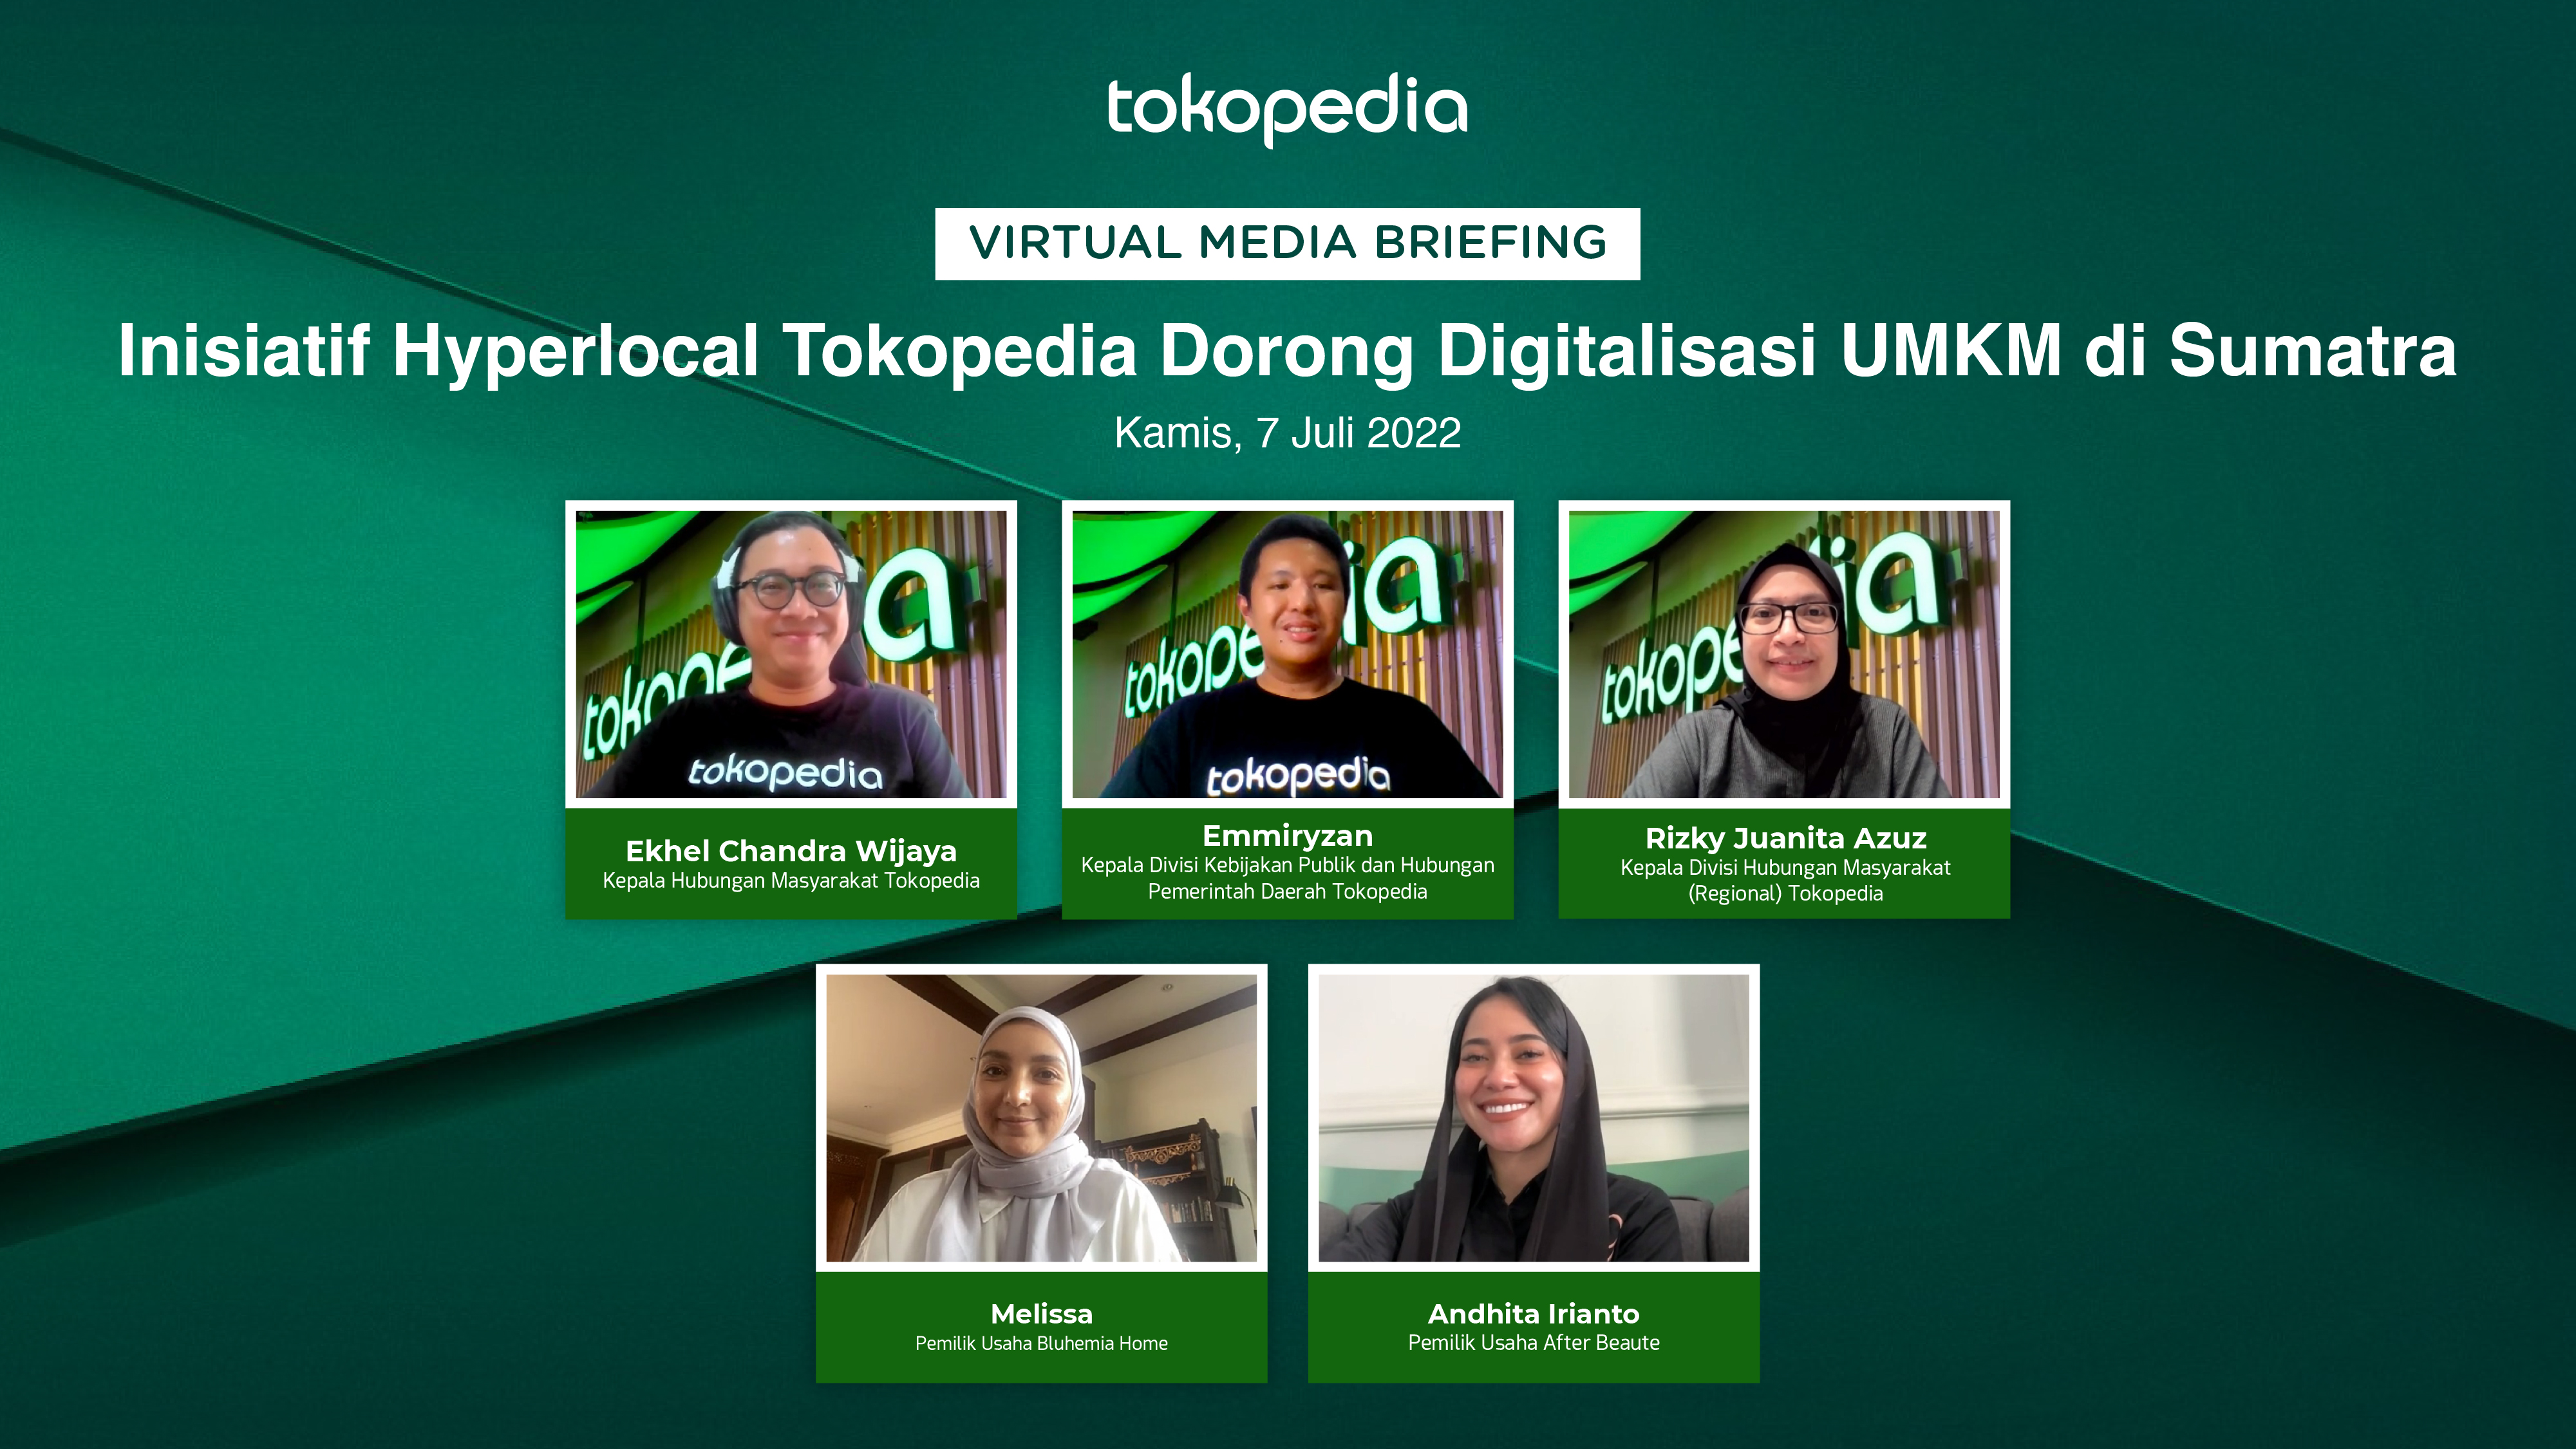 Inisiatif Hyperlocal Tokopedia Dorong Percepatan Digitalisasi UMKM di Sumatra